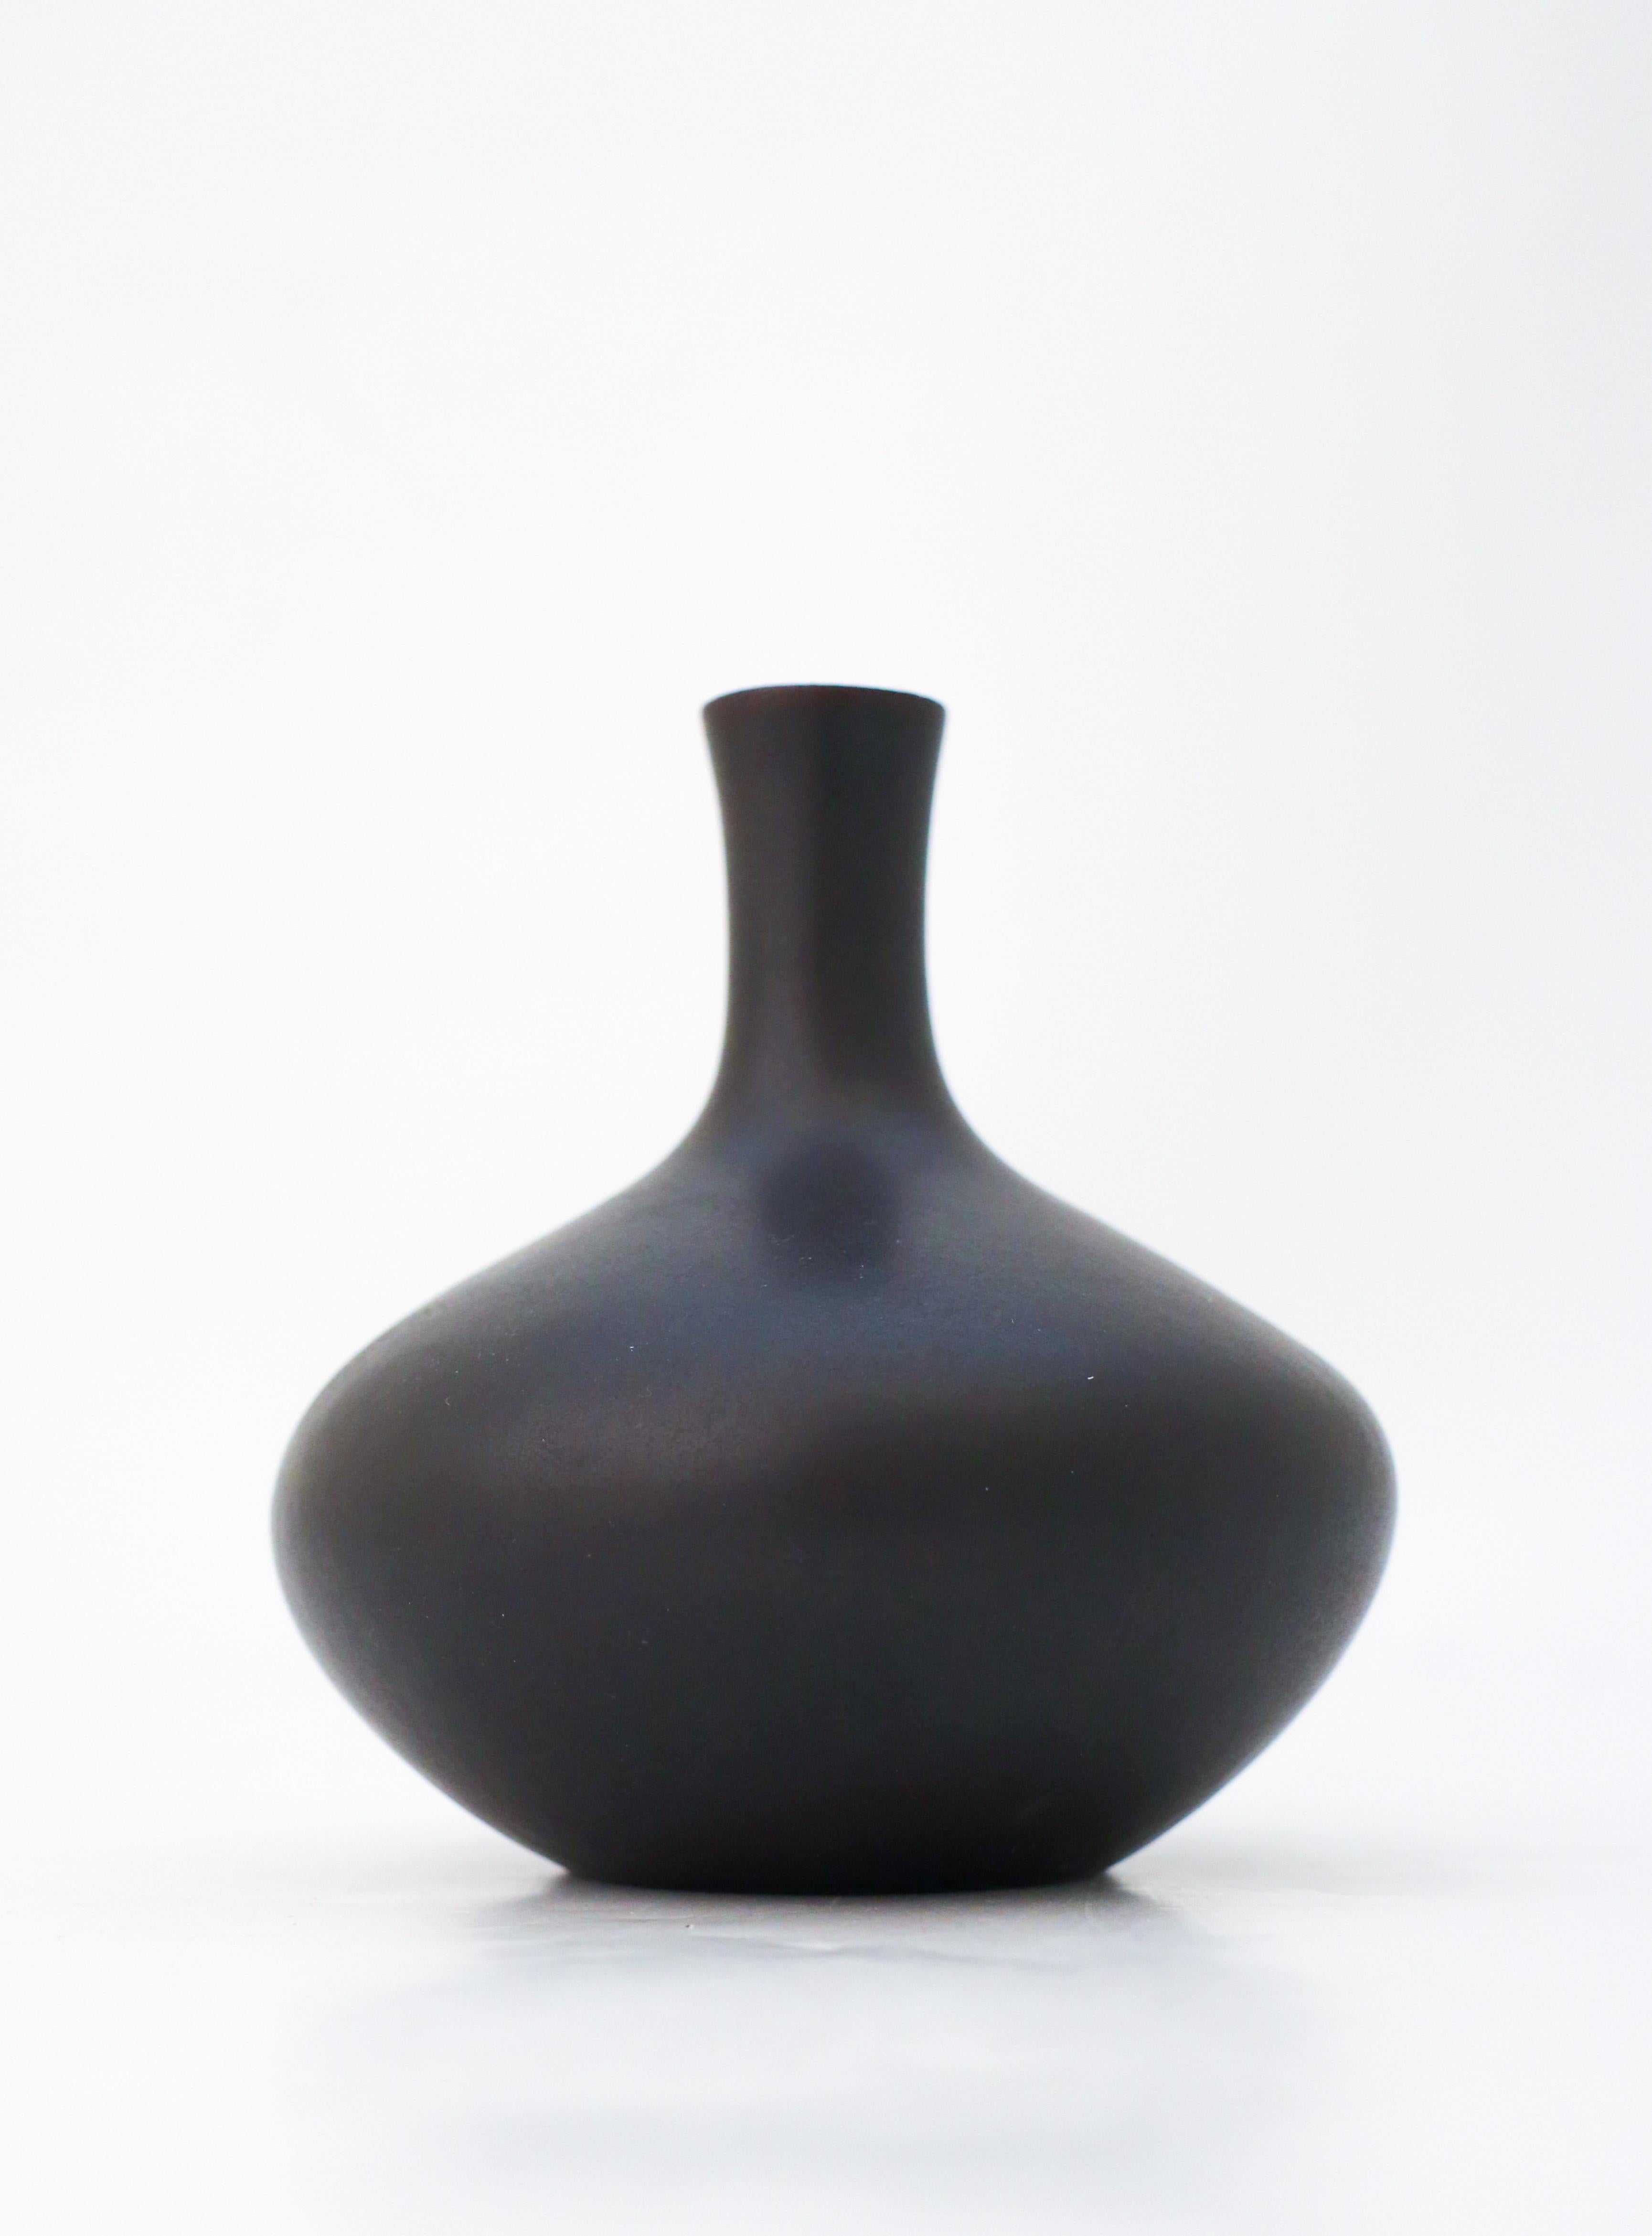 A black vase designed by Carl-Harry Stålhane at Rörstrand. The vase is 10.5 cm (4.2